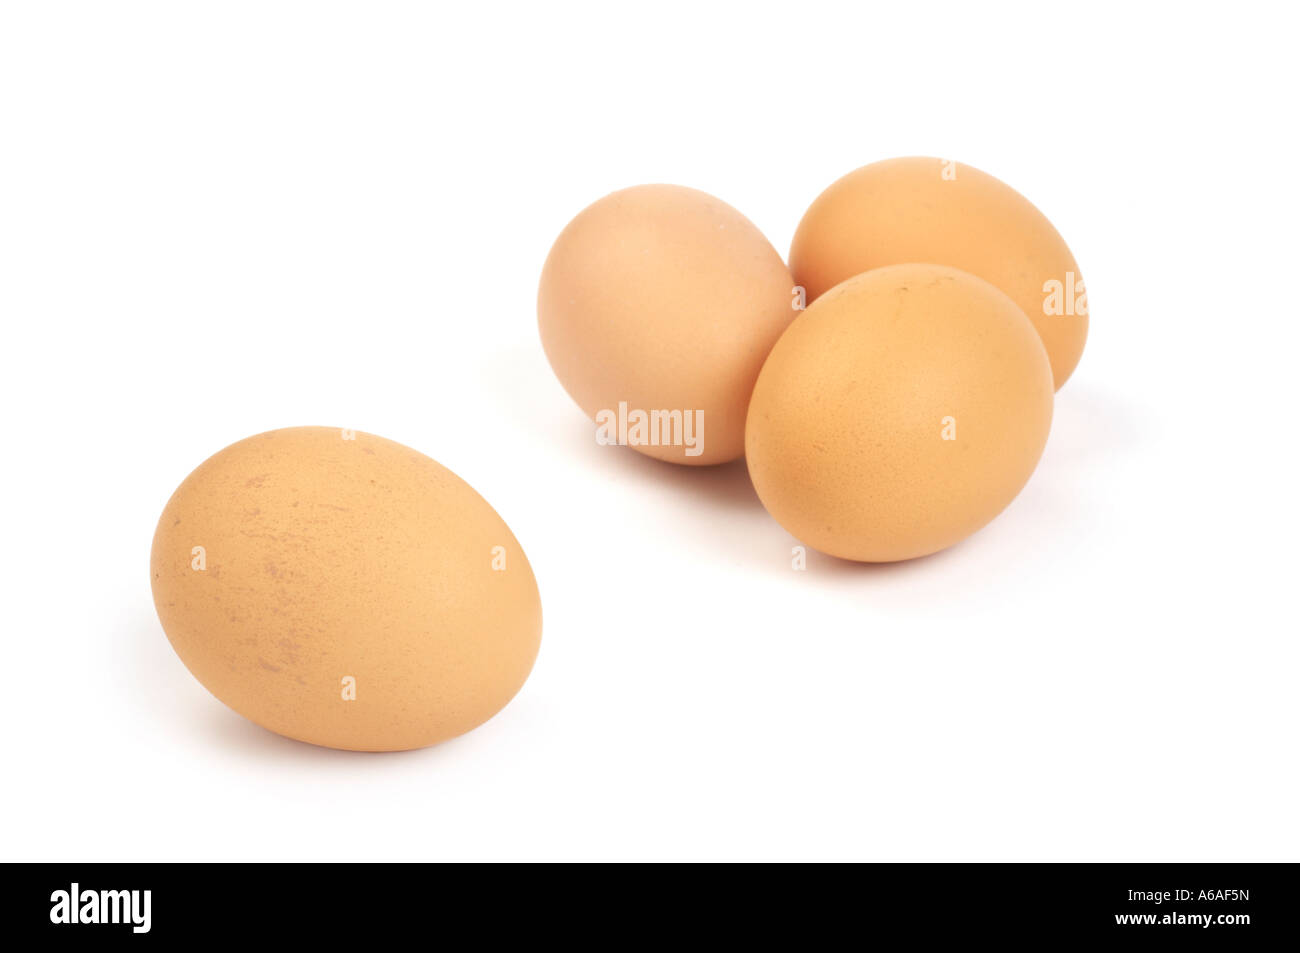 Free Range eggs Stock Photo